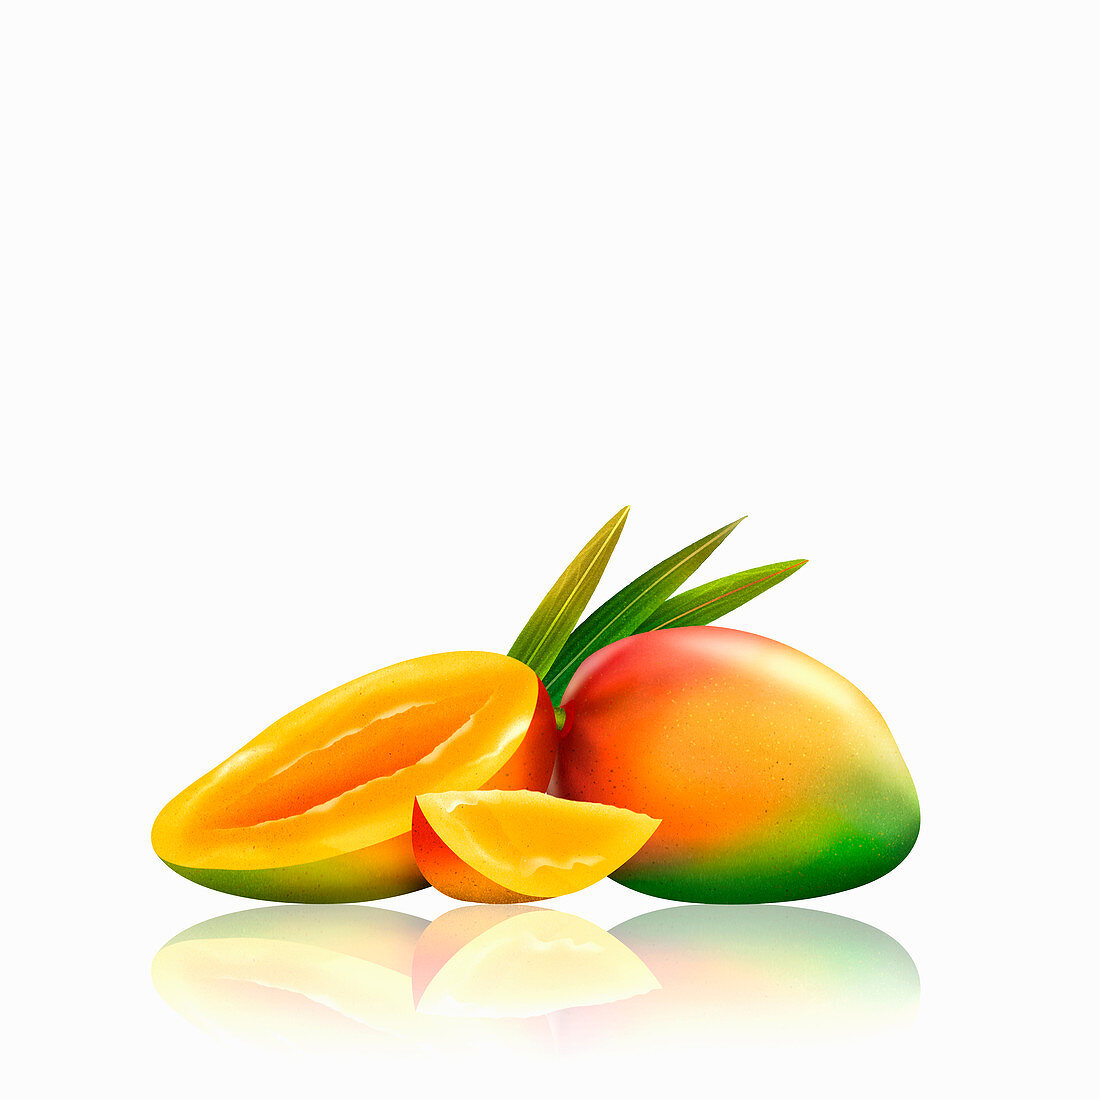 Fresh mangoes, whole, half and slice, illustration